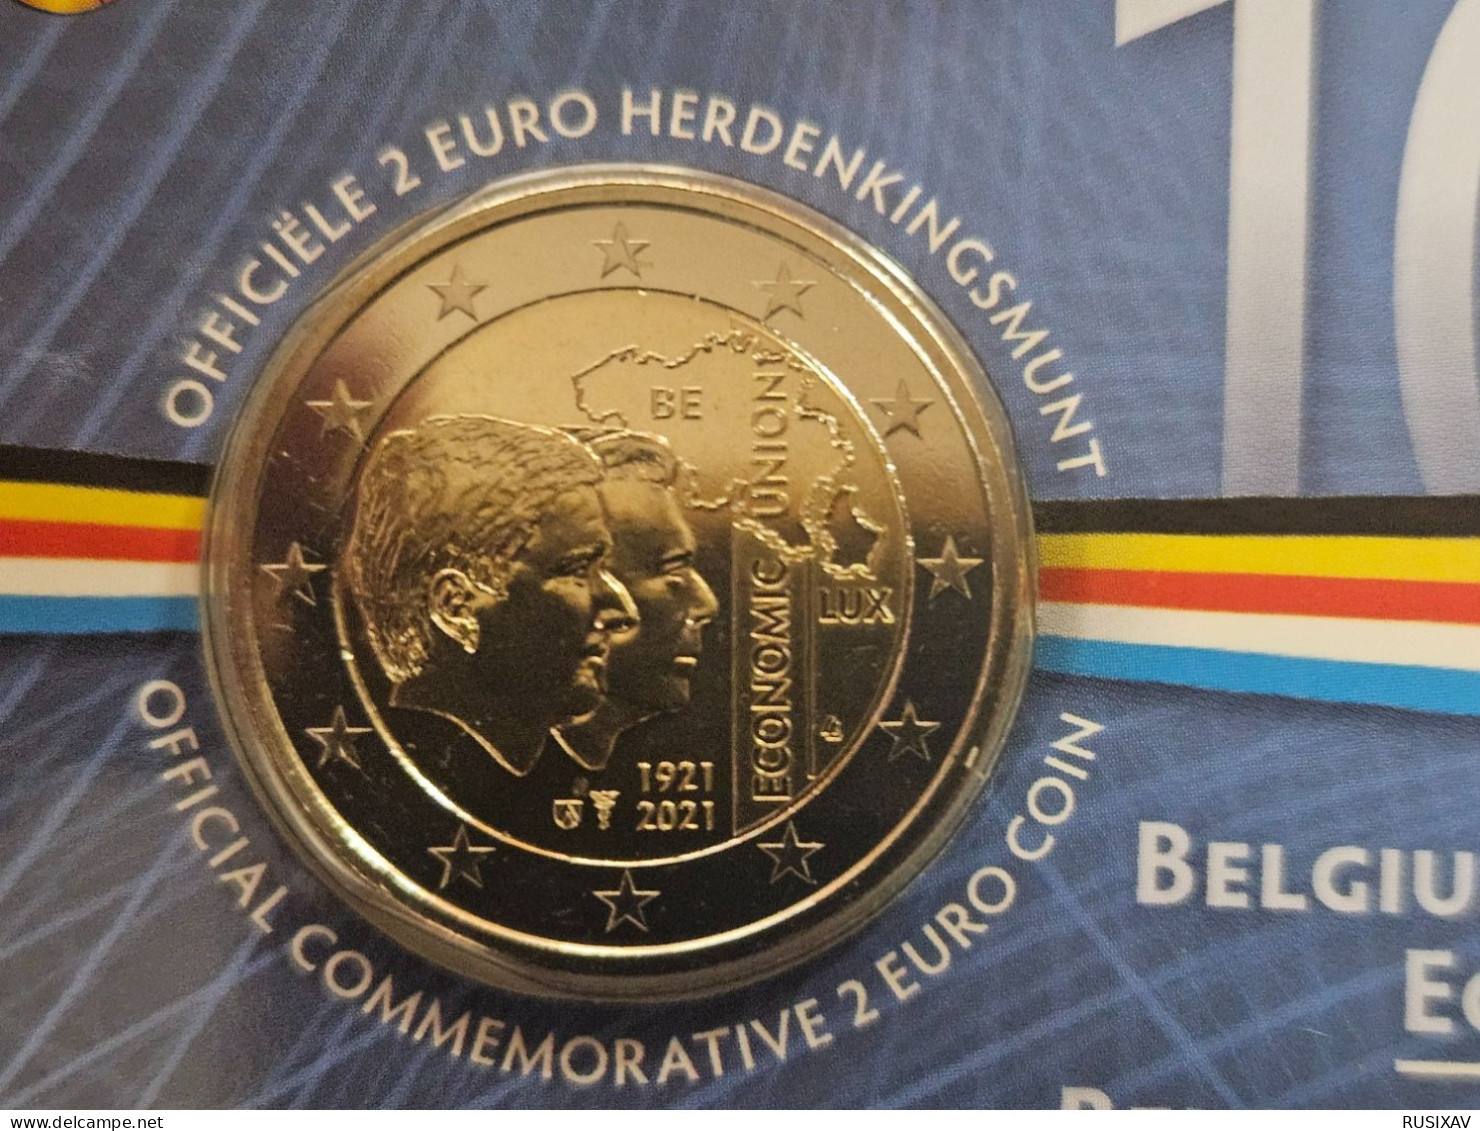 Belgique 2021 Coincard 2 Euros Belgique 2021 Union économique - Version Flamand - Belgio